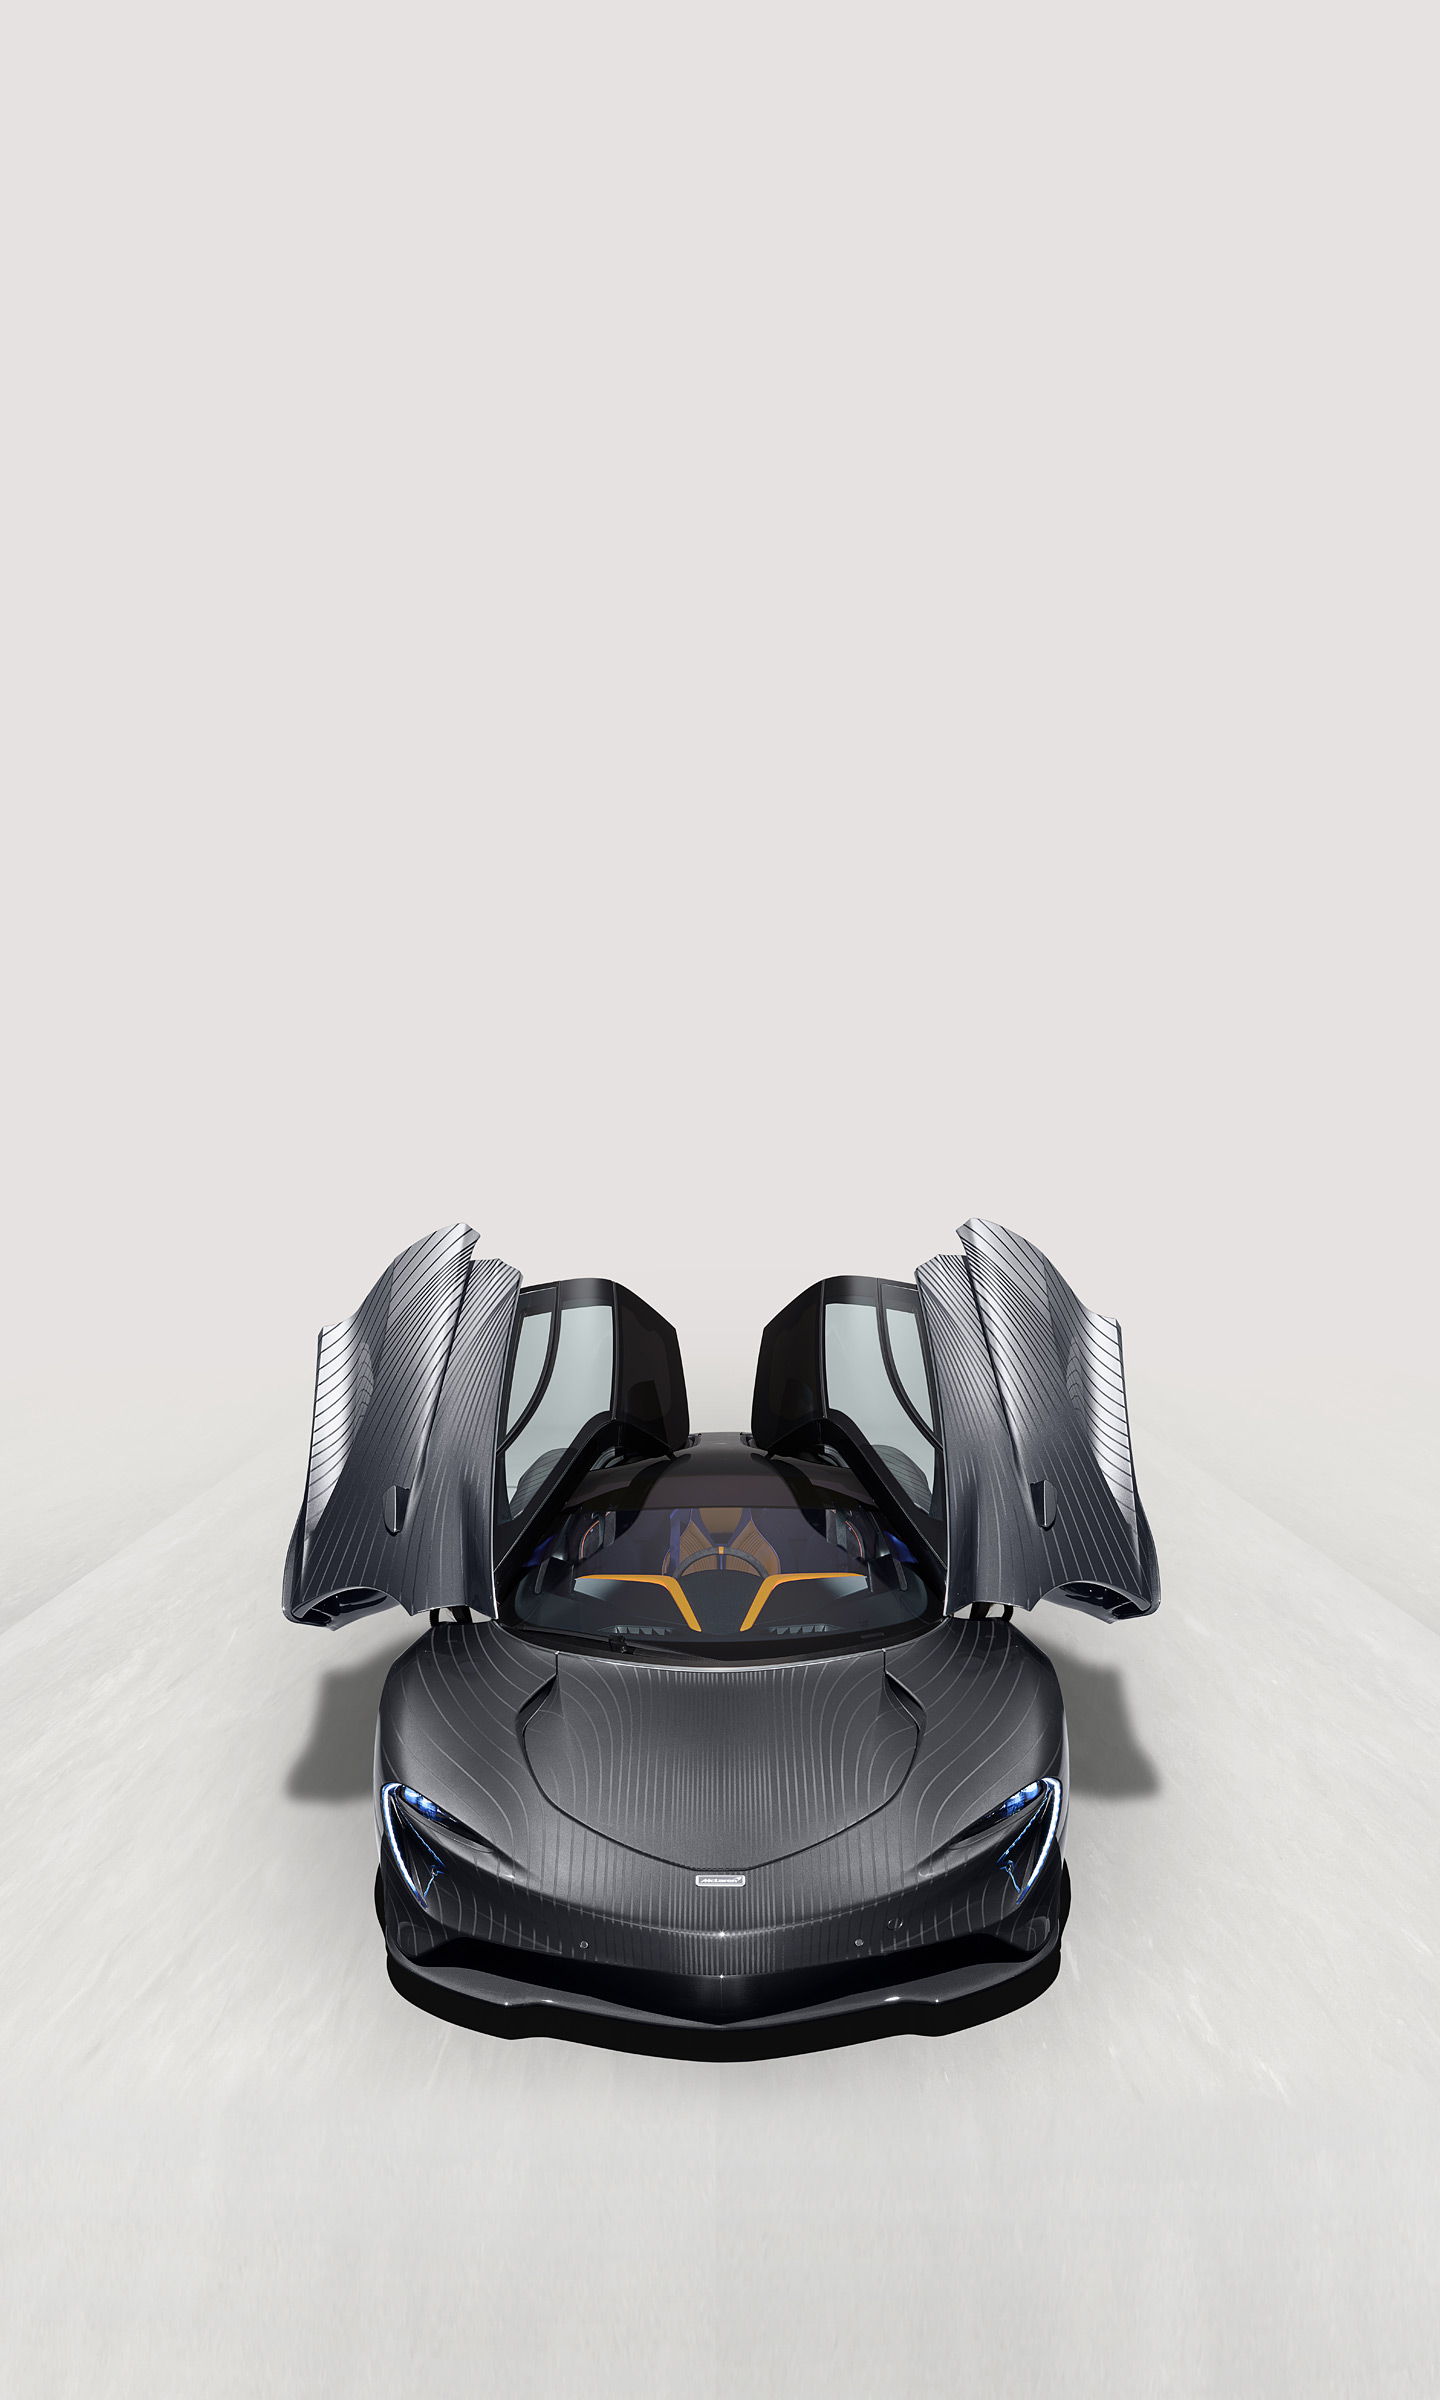  2021 McLaren Speedtail Albert by MSO Wallpaper.